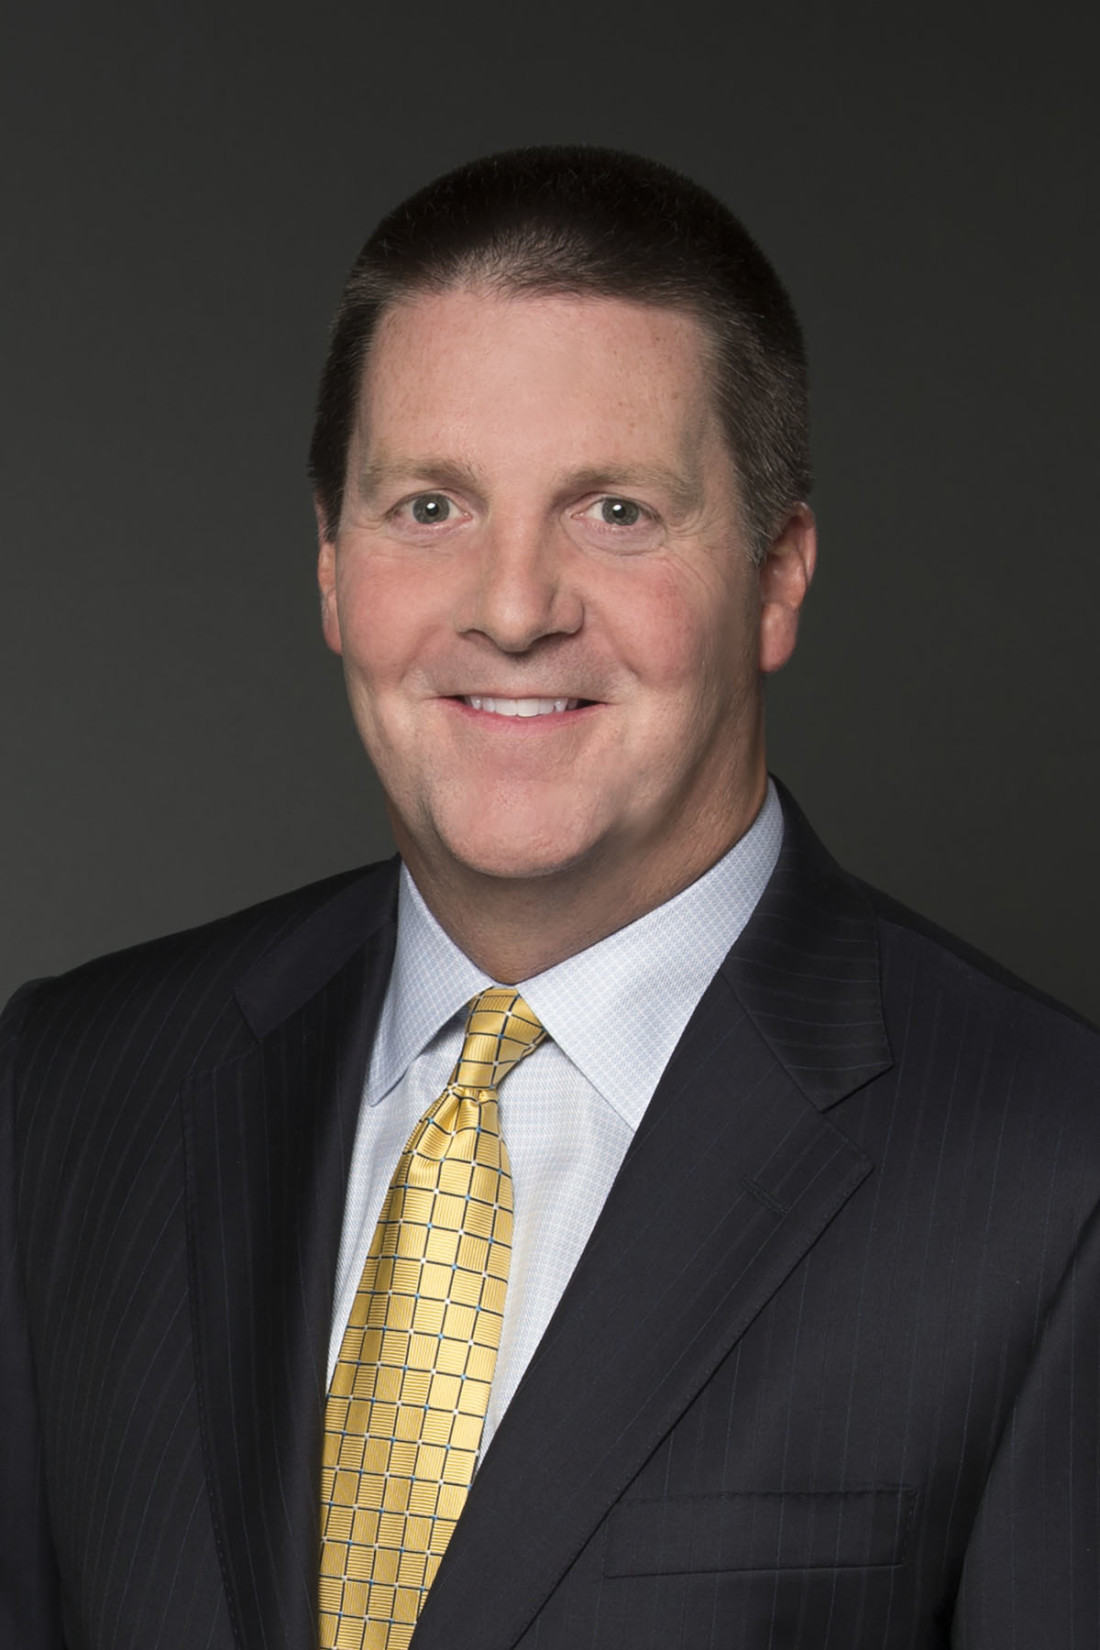 Keith E. Donovan, Managing Partner